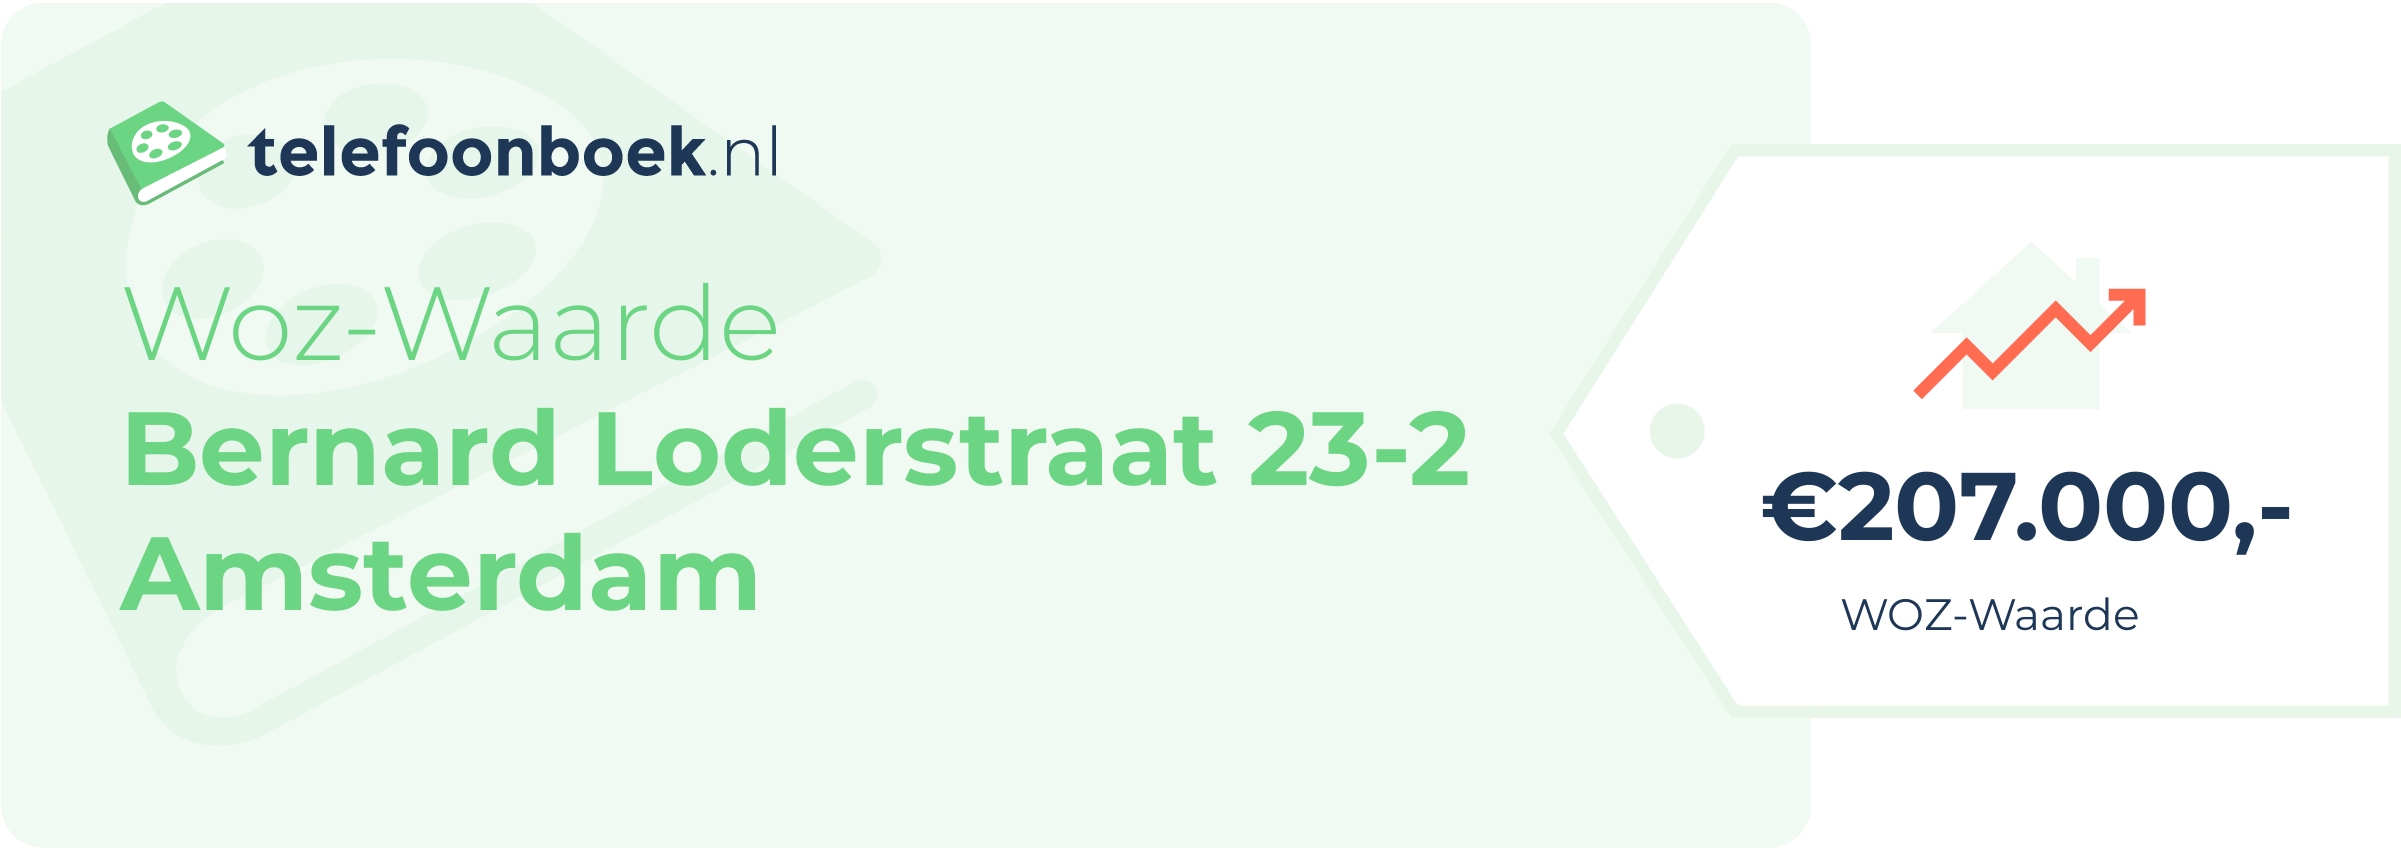 WOZ-waarde Bernard Loderstraat 23-2 Amsterdam